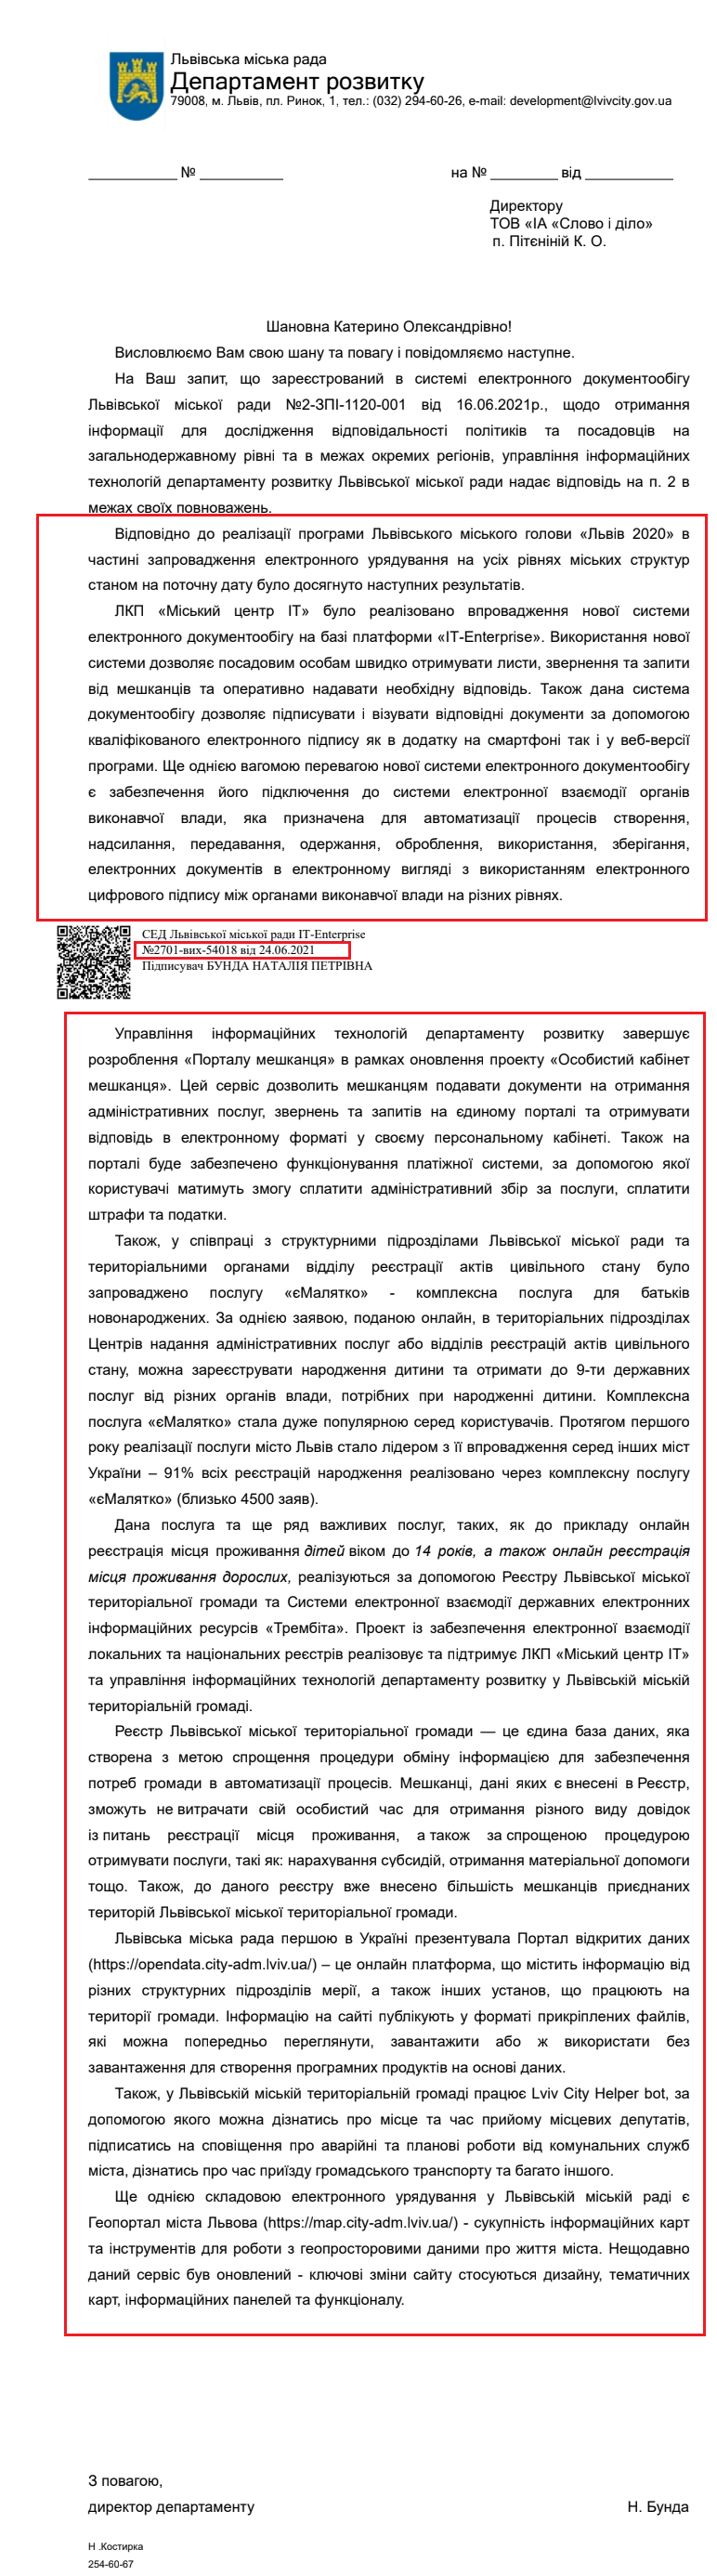 Лист Львівської міської ради від 24 червня 2020 року